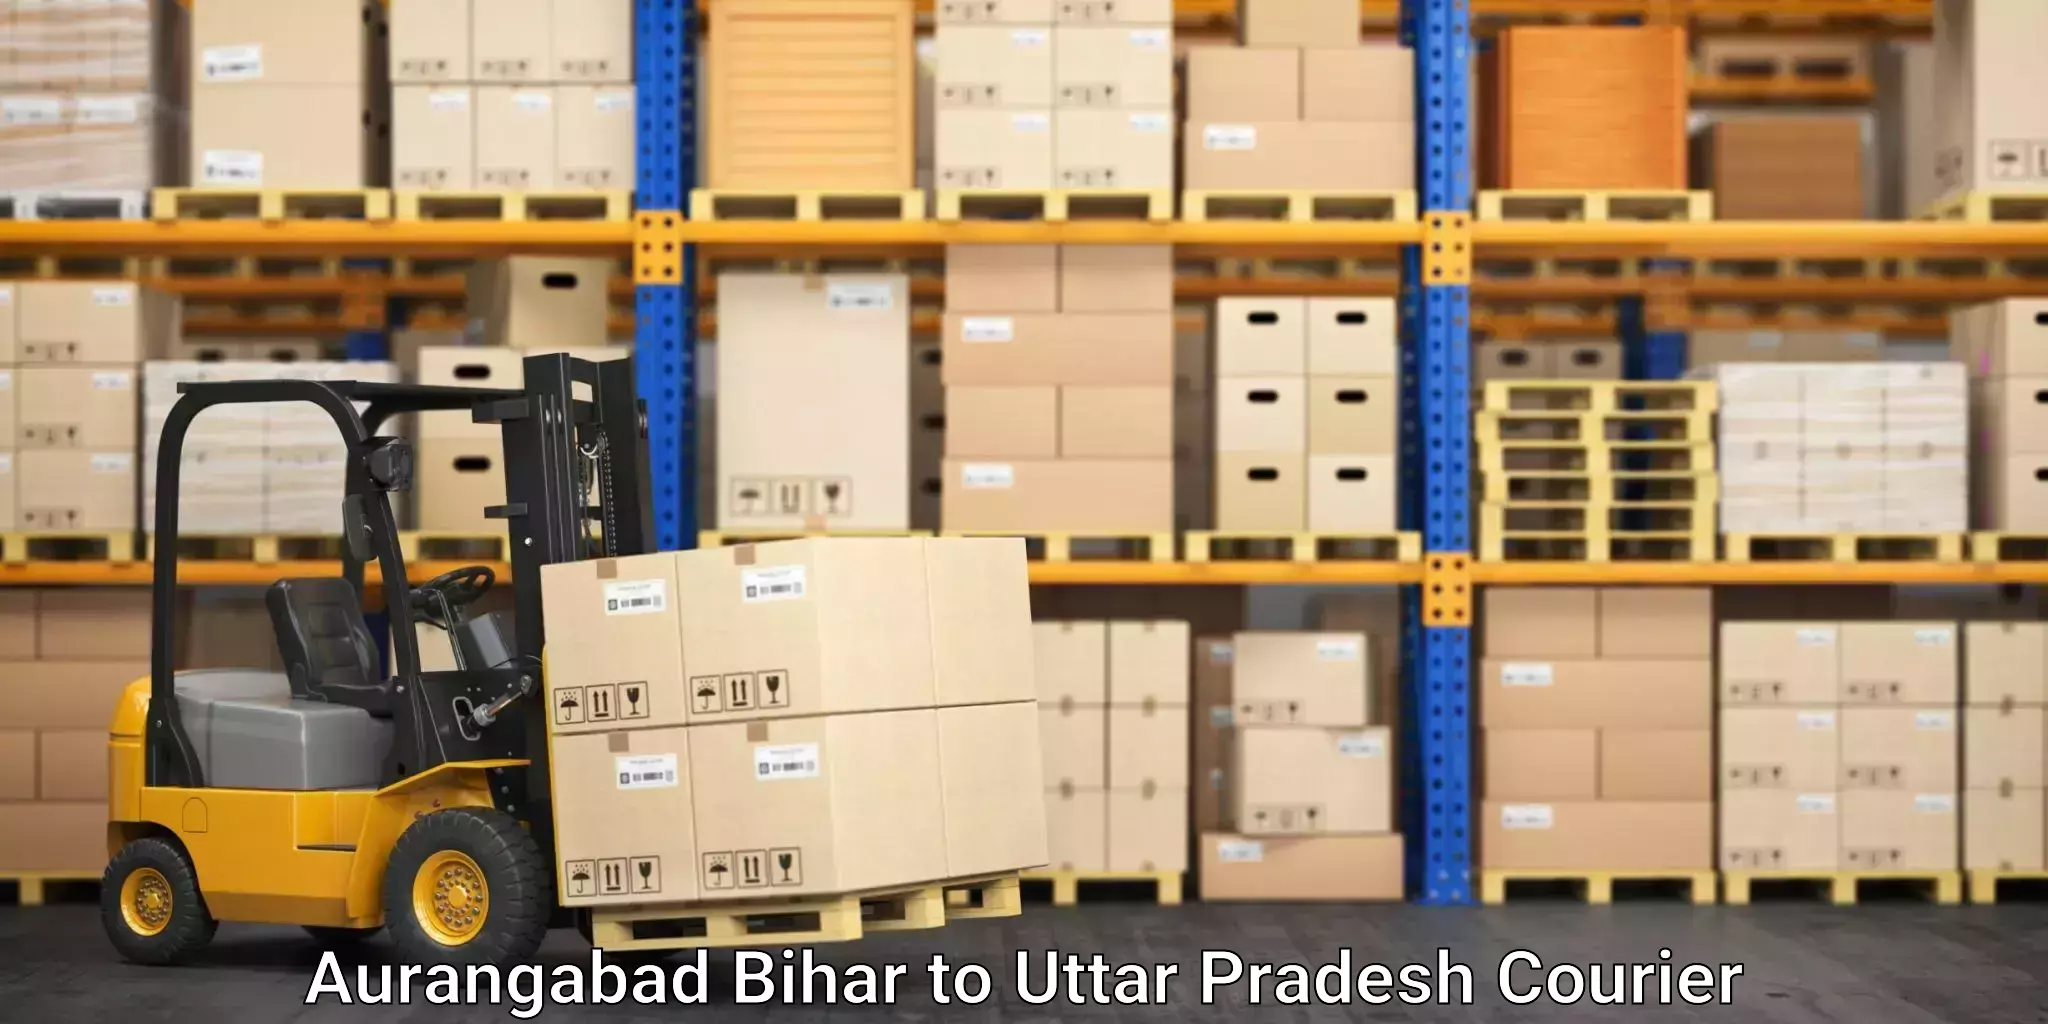 Furniture moving assistance Aurangabad Bihar to Mawana